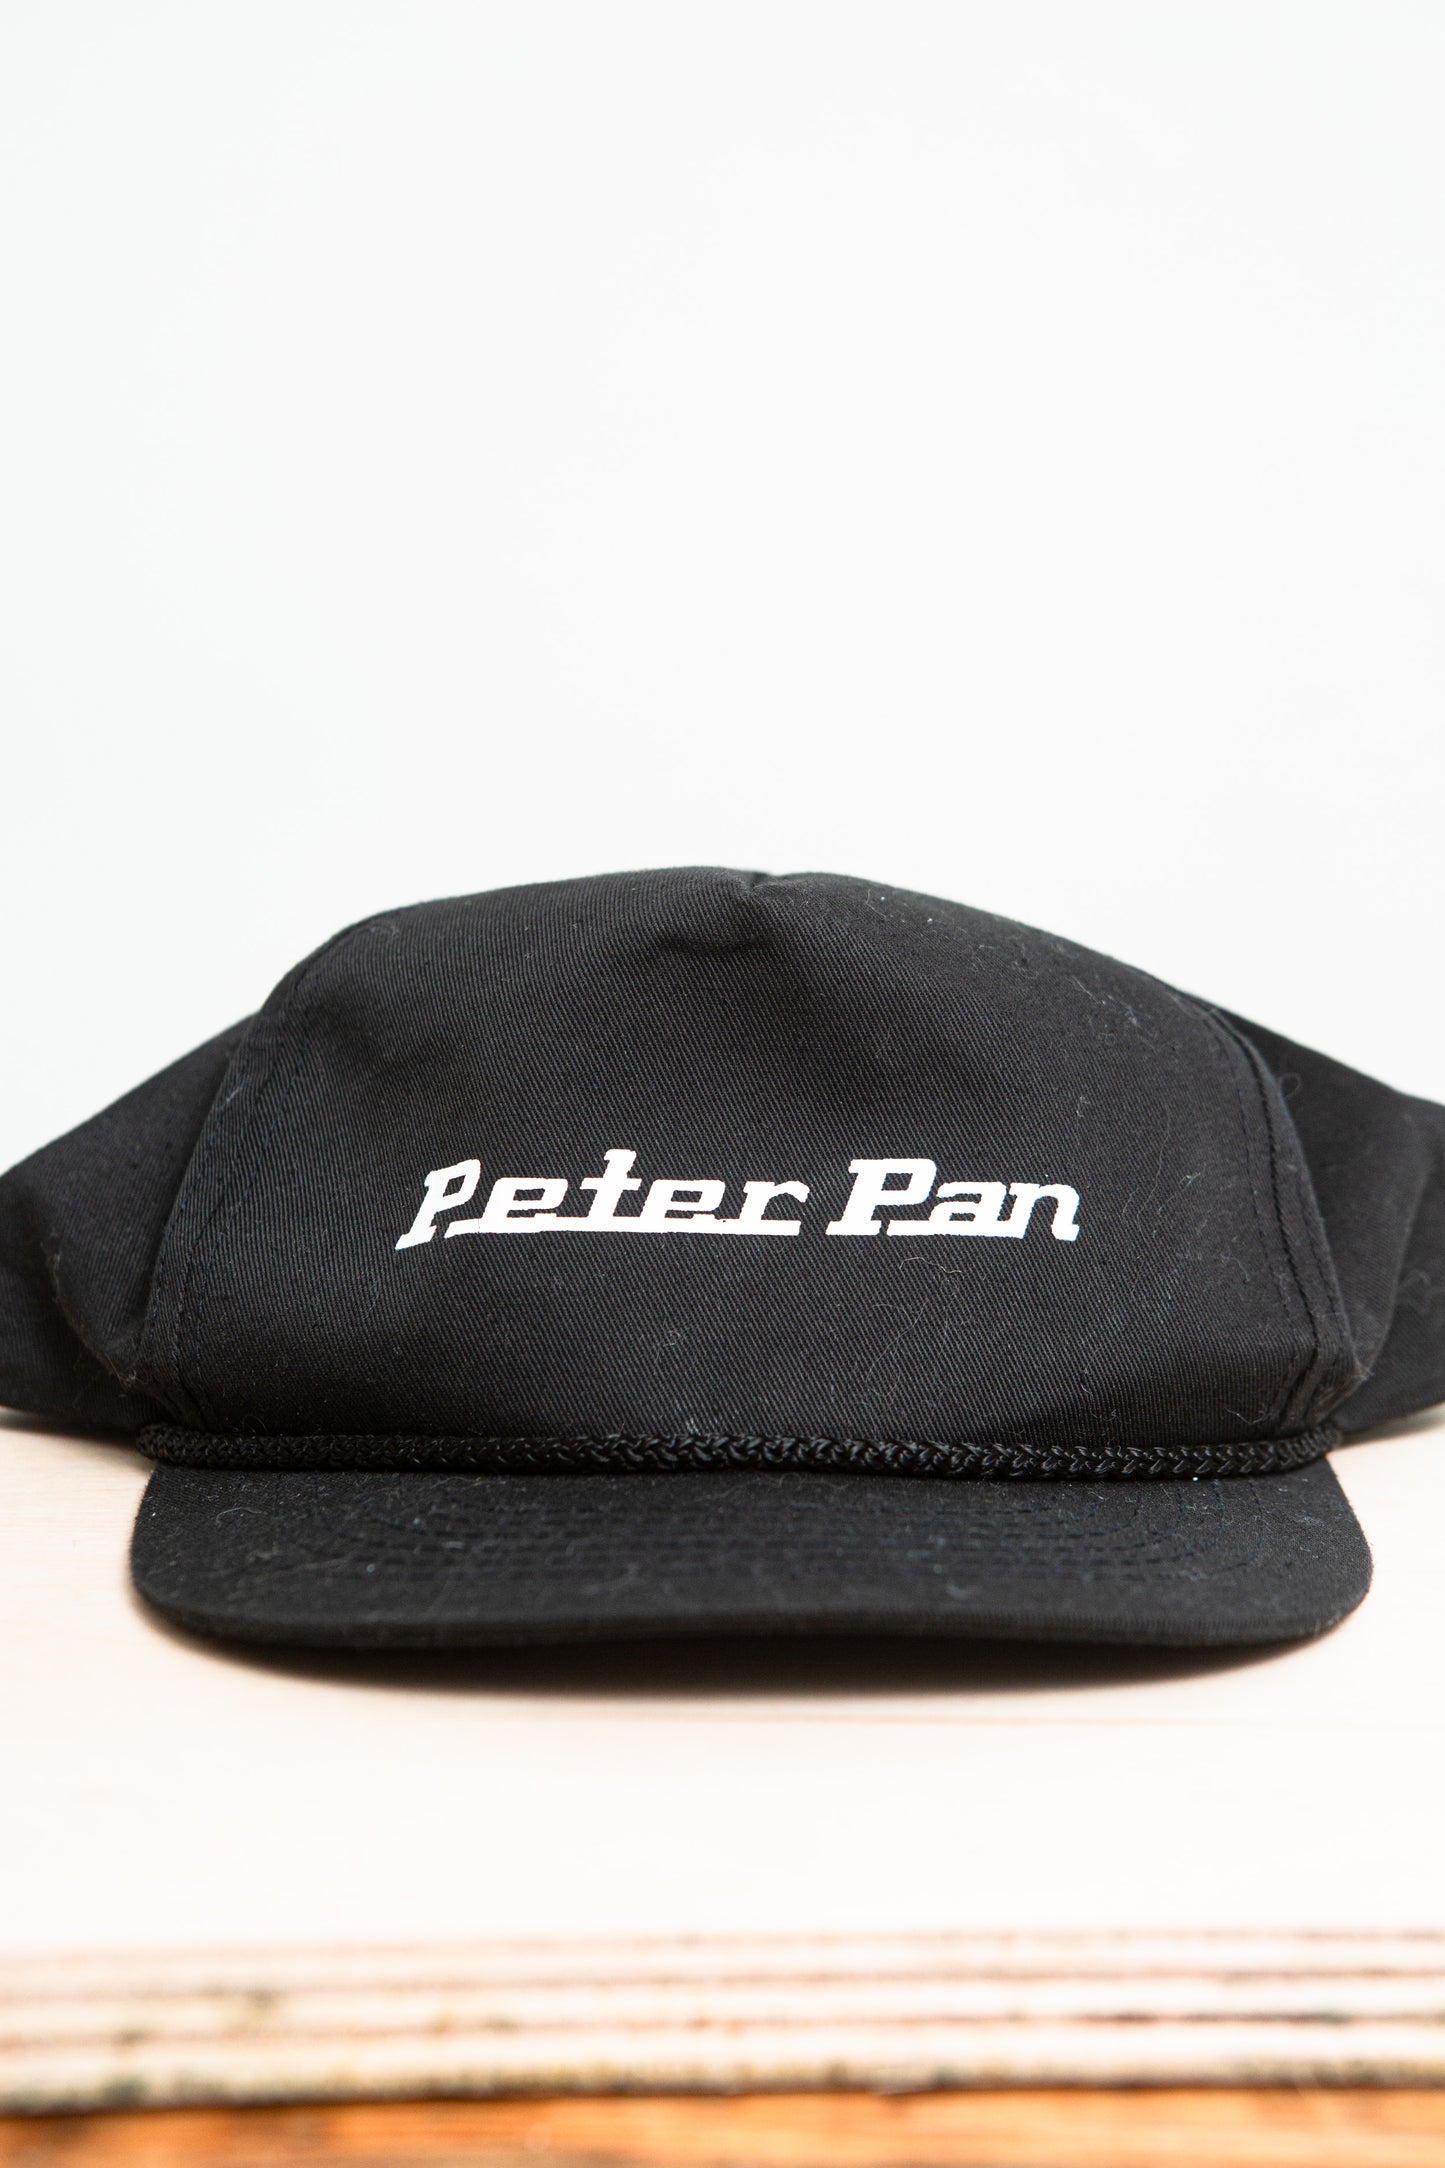 Vintage Peter Pan Bus Snapback hat